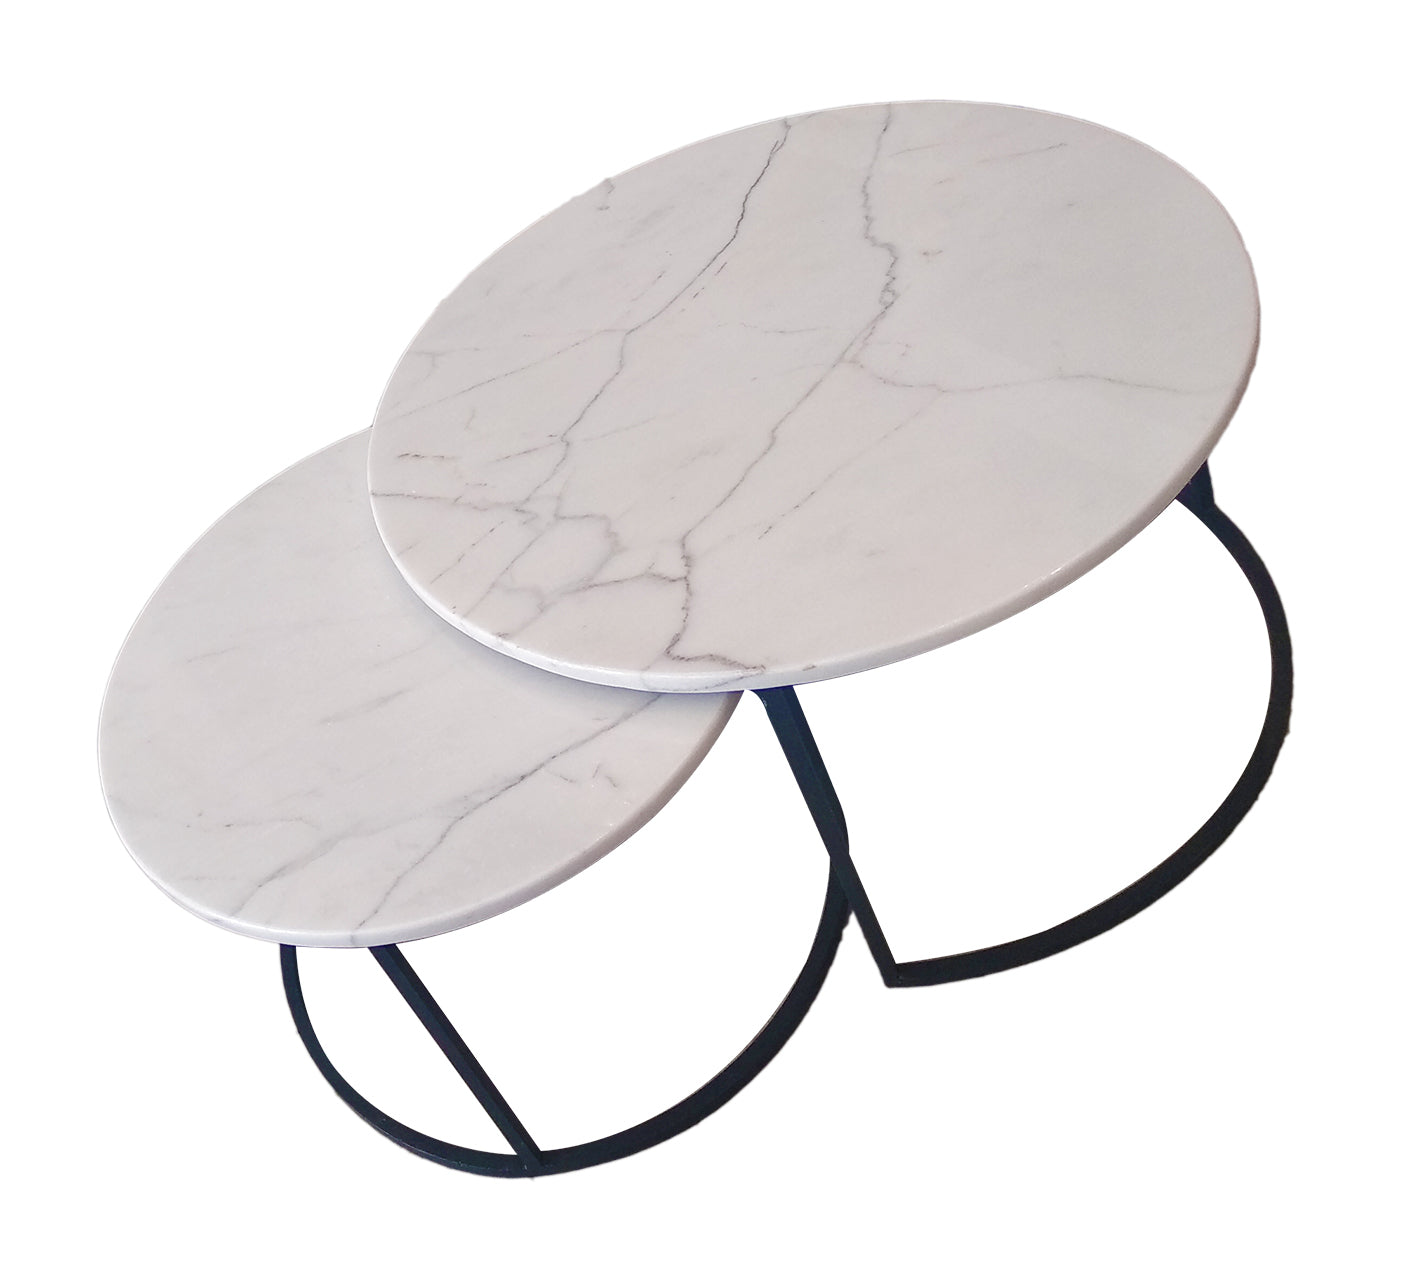 Table Basse Marbre blanc carrare ,Pied en métal gris mat (Grande)